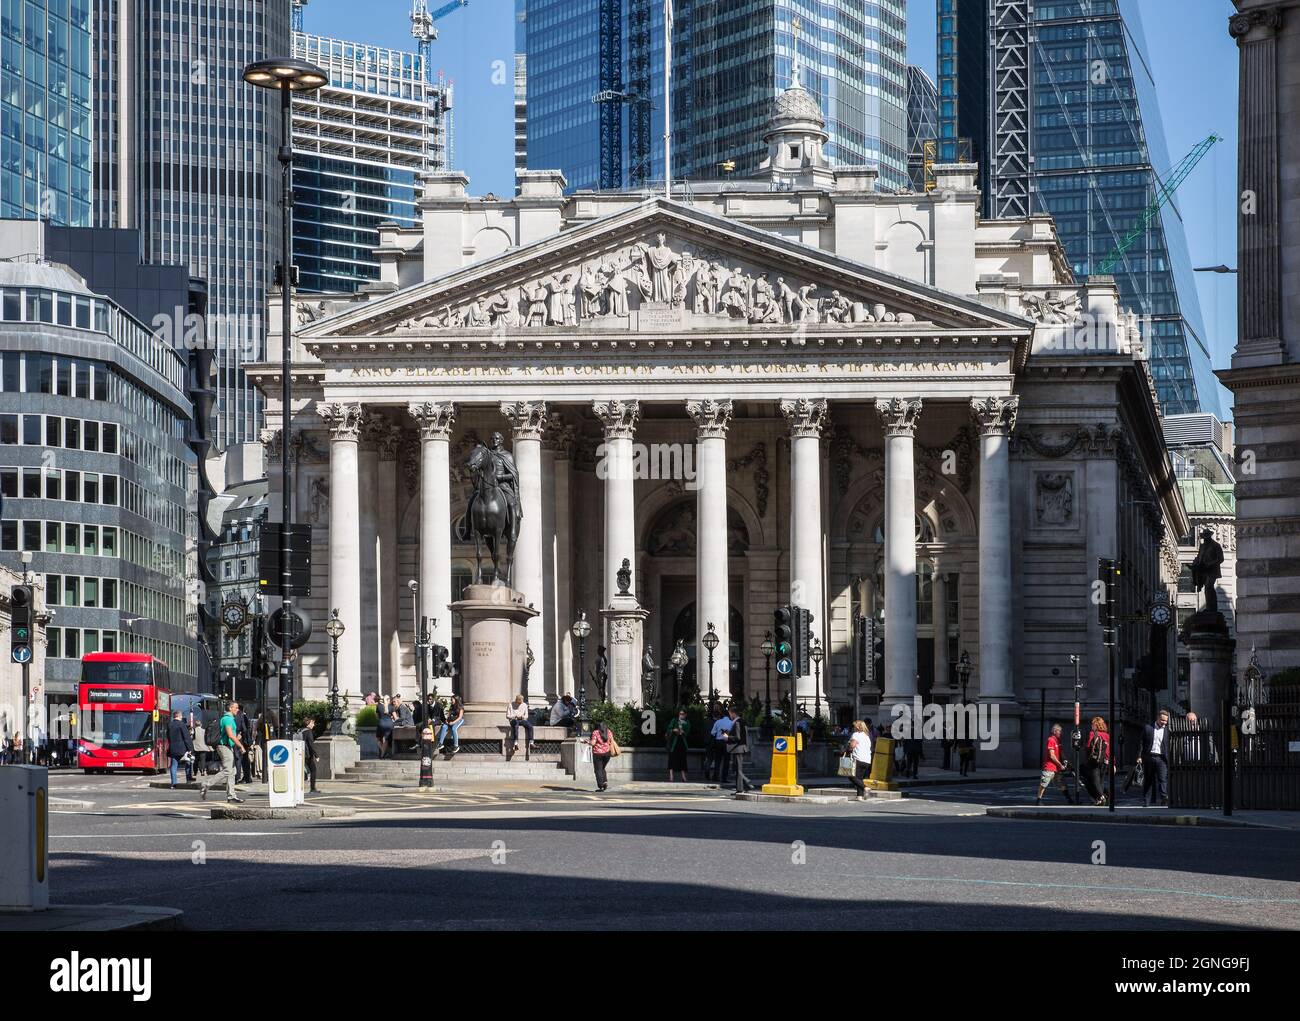 Londres, Banco de Inglaterra, Portikus mit korinthischen Säulen, vollendet 1833 von John Soane, dahinter gläserne Hochhausfassaden der Londoner City Foto de stock